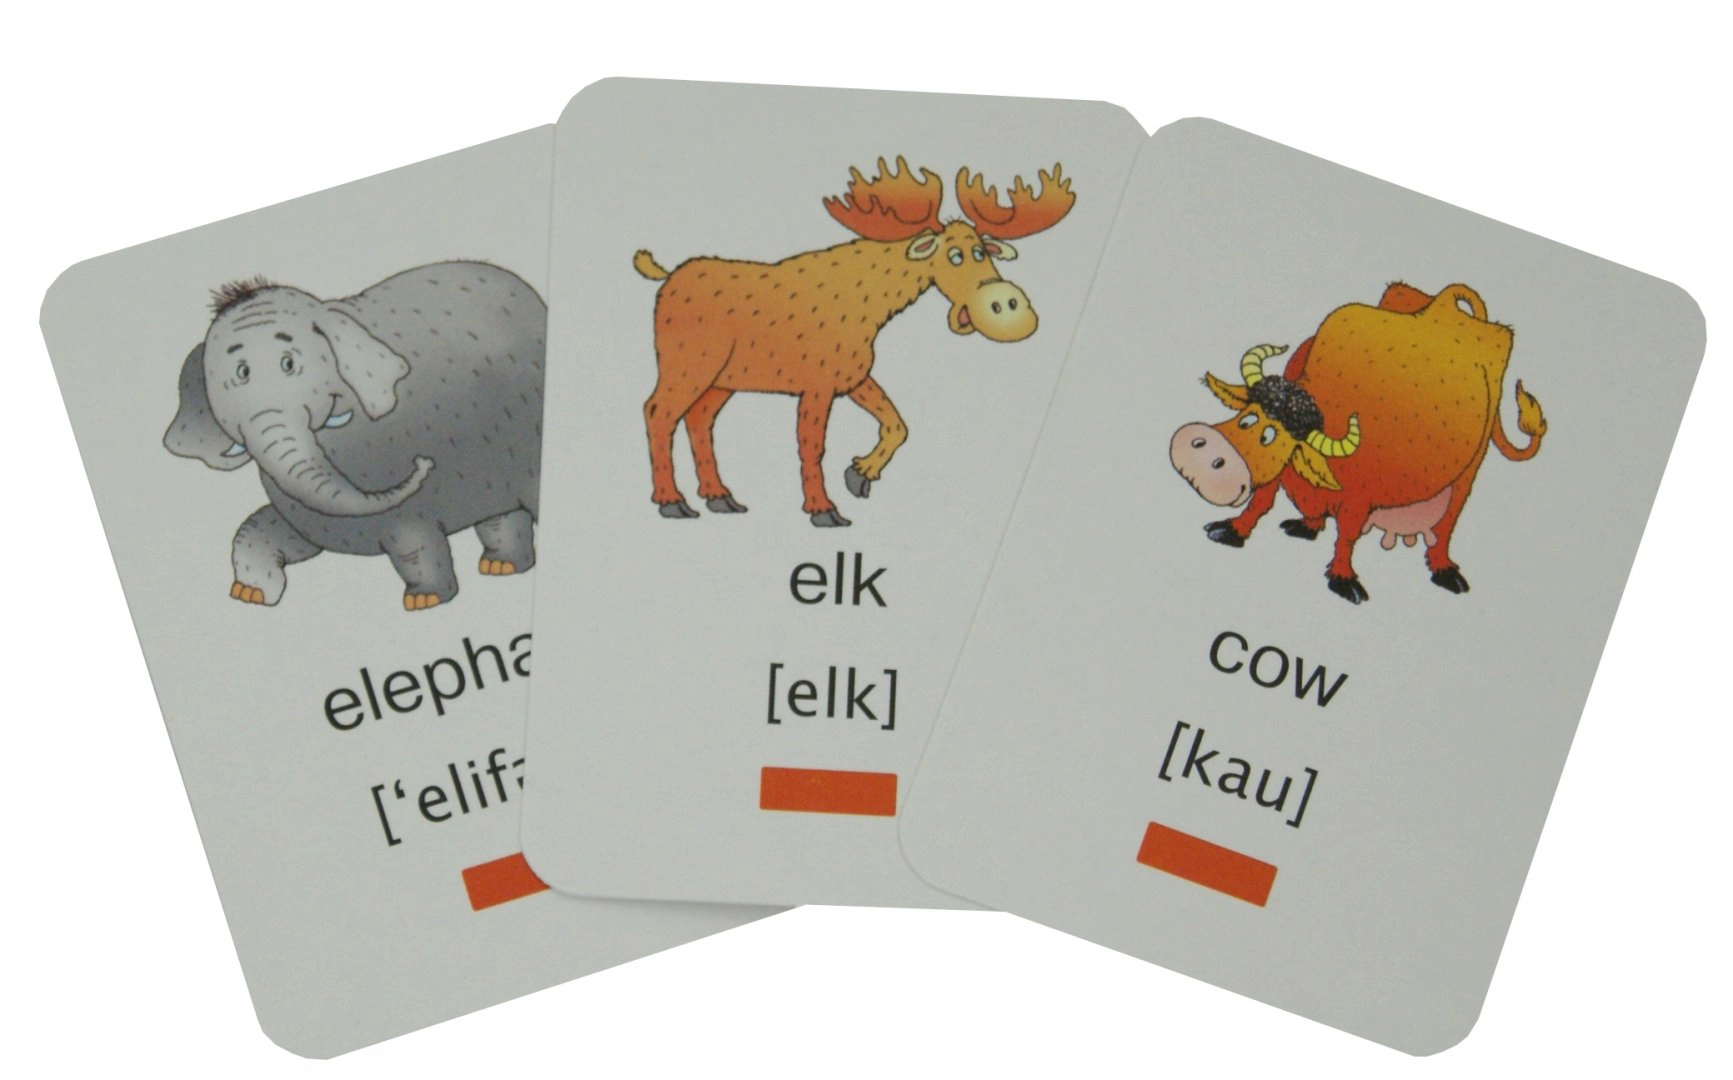 пример отличных карточек для изучения иностранных слов